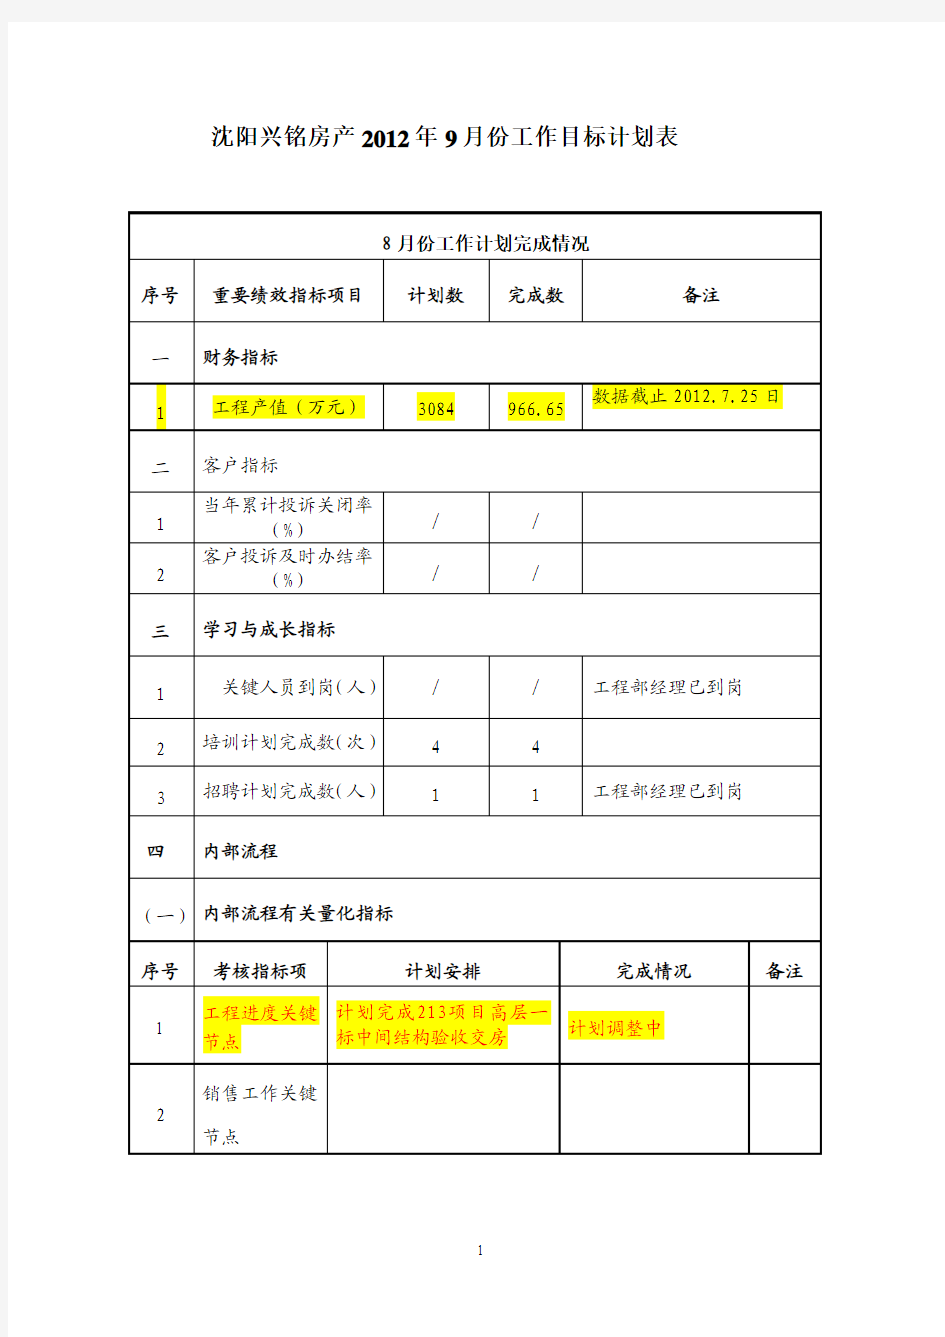 沈阳兴铭房产2012年9月份工作目标计划表